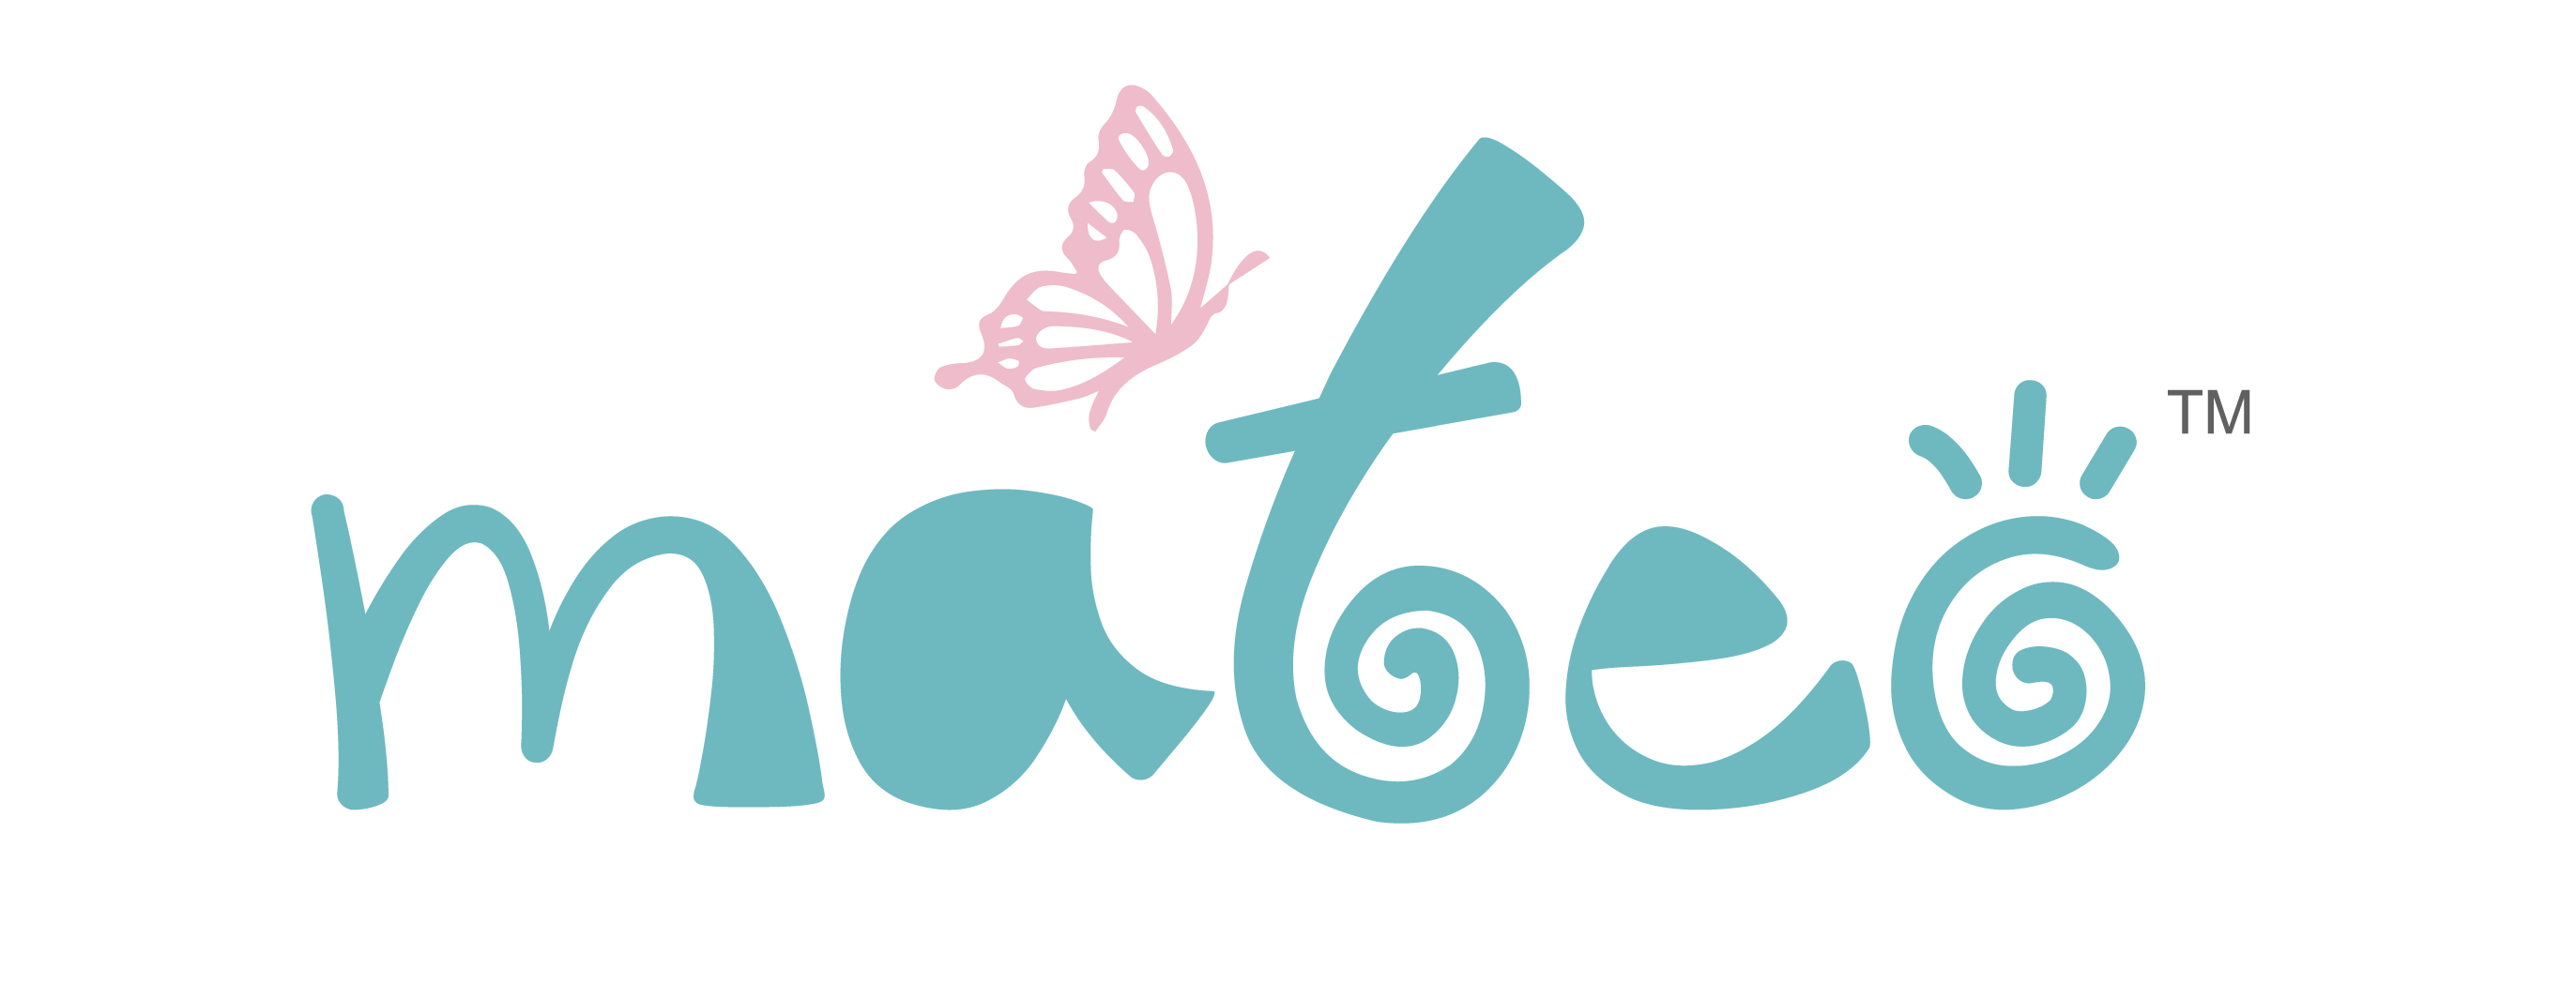 Mateo Logo